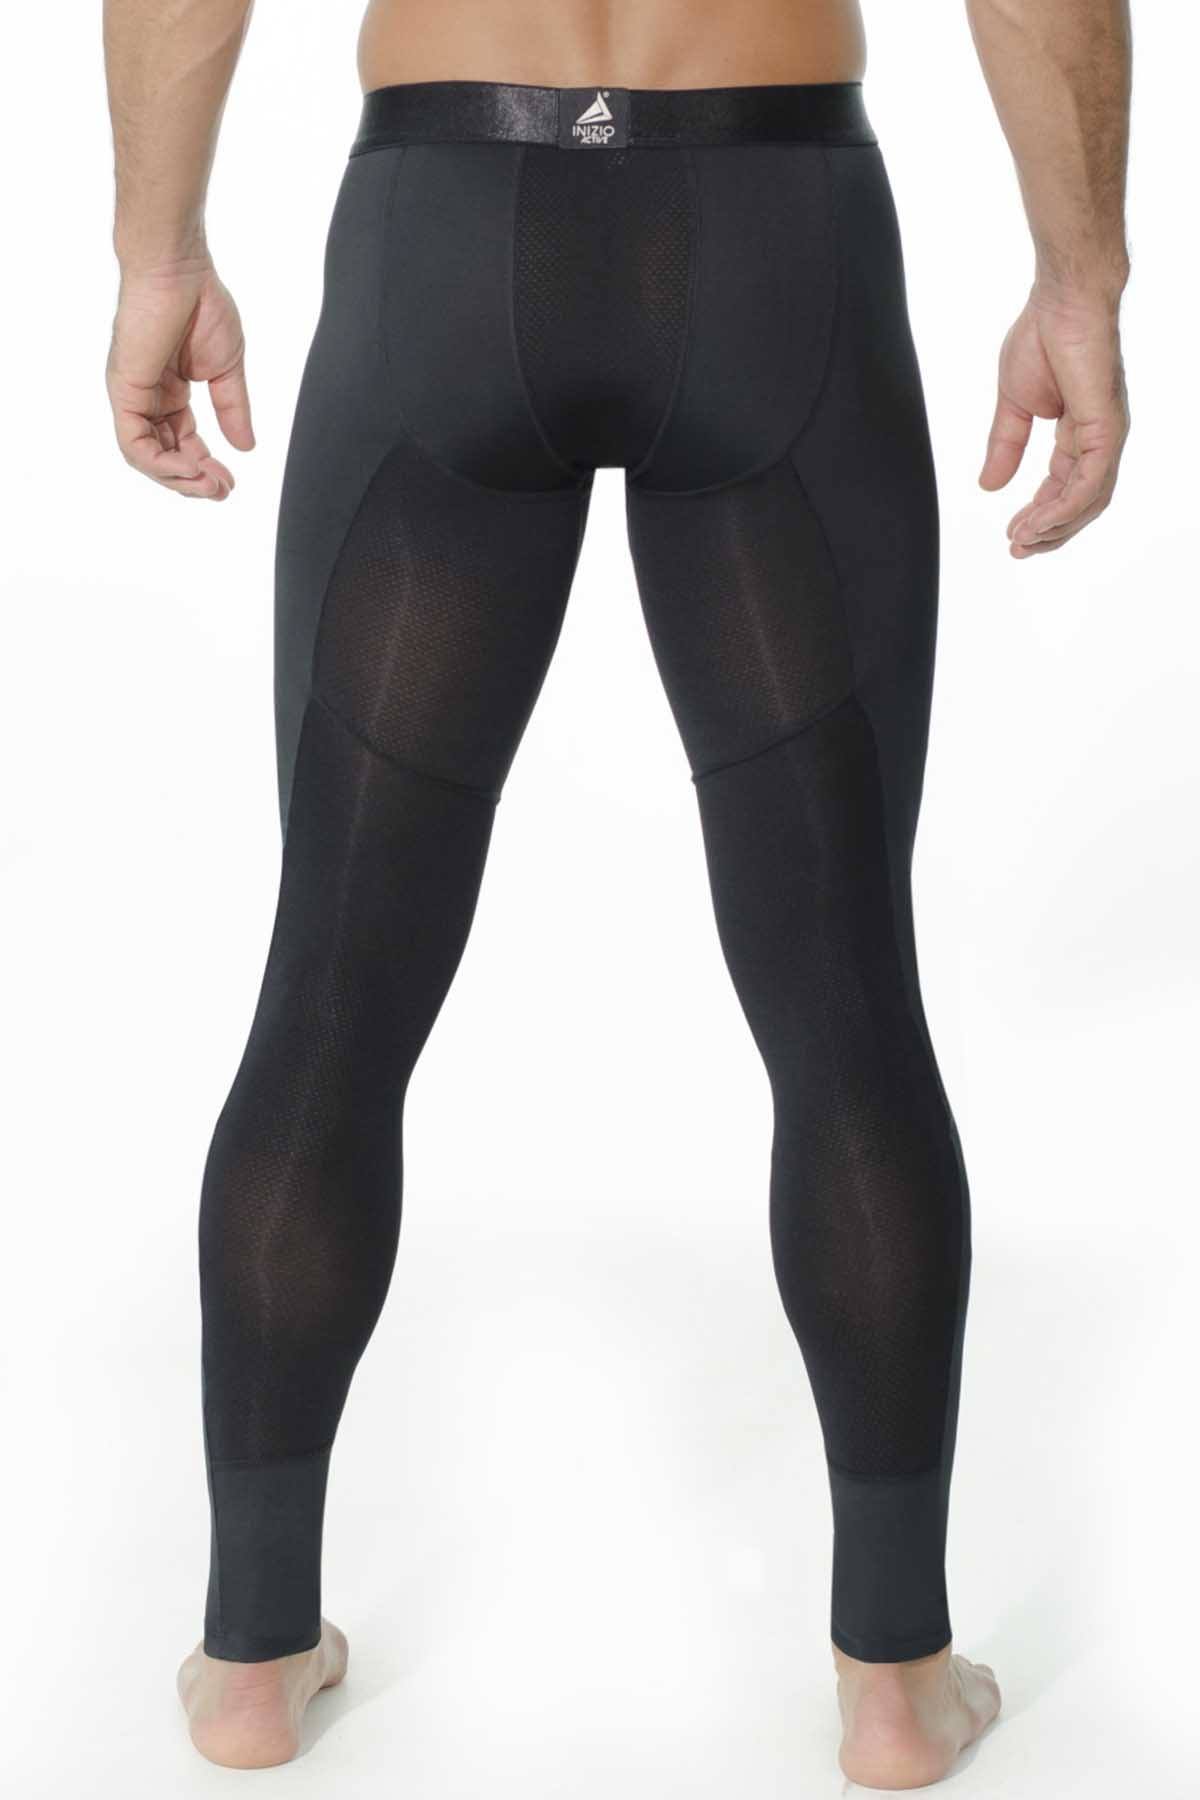 INIZIO Black Microfiber Athletic Pant